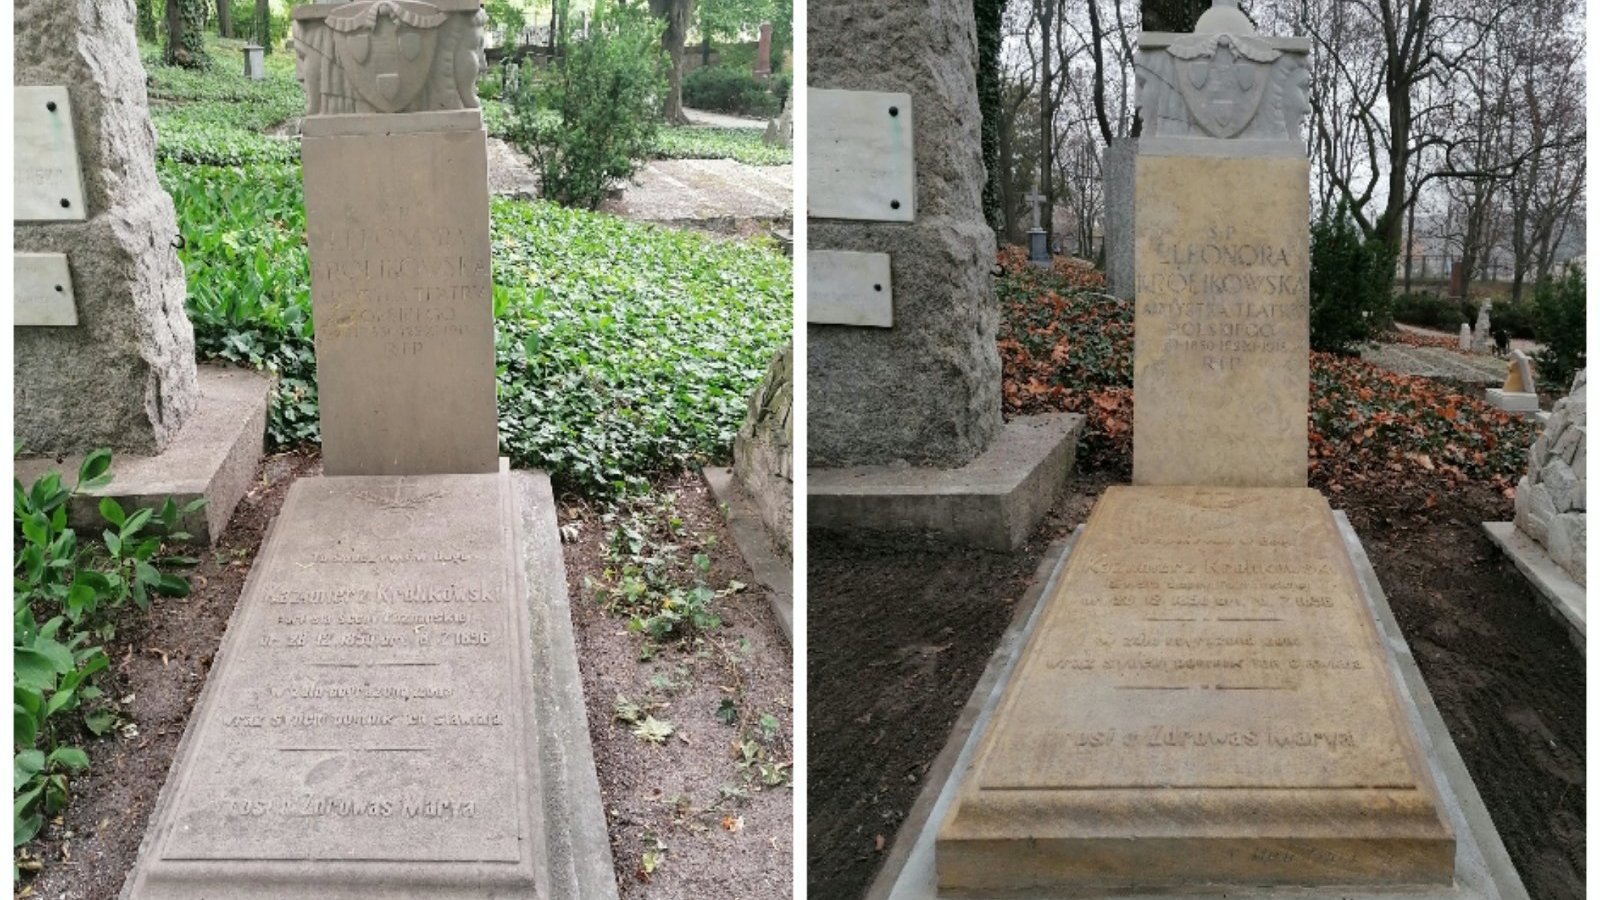 Zakończyła się kompleksowa renowacja 24 nagrobków na Cmentarzu Zasłużonych Wielkopolan.